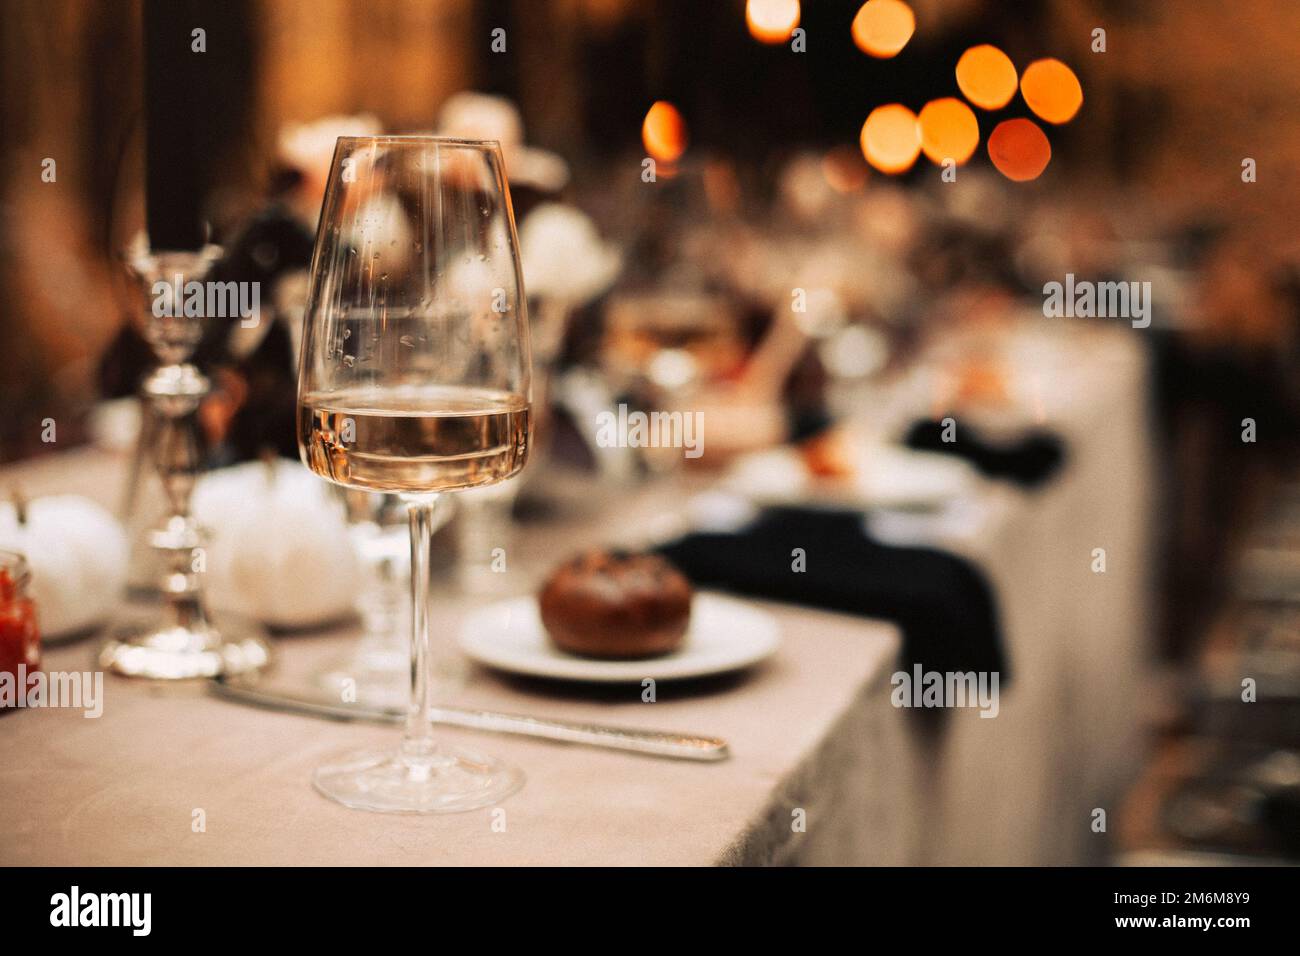 Enfoque selectivo en el vaso alto con vino blanco de pie en la mesa de la cena después de la banqueta festiva Foto de stock